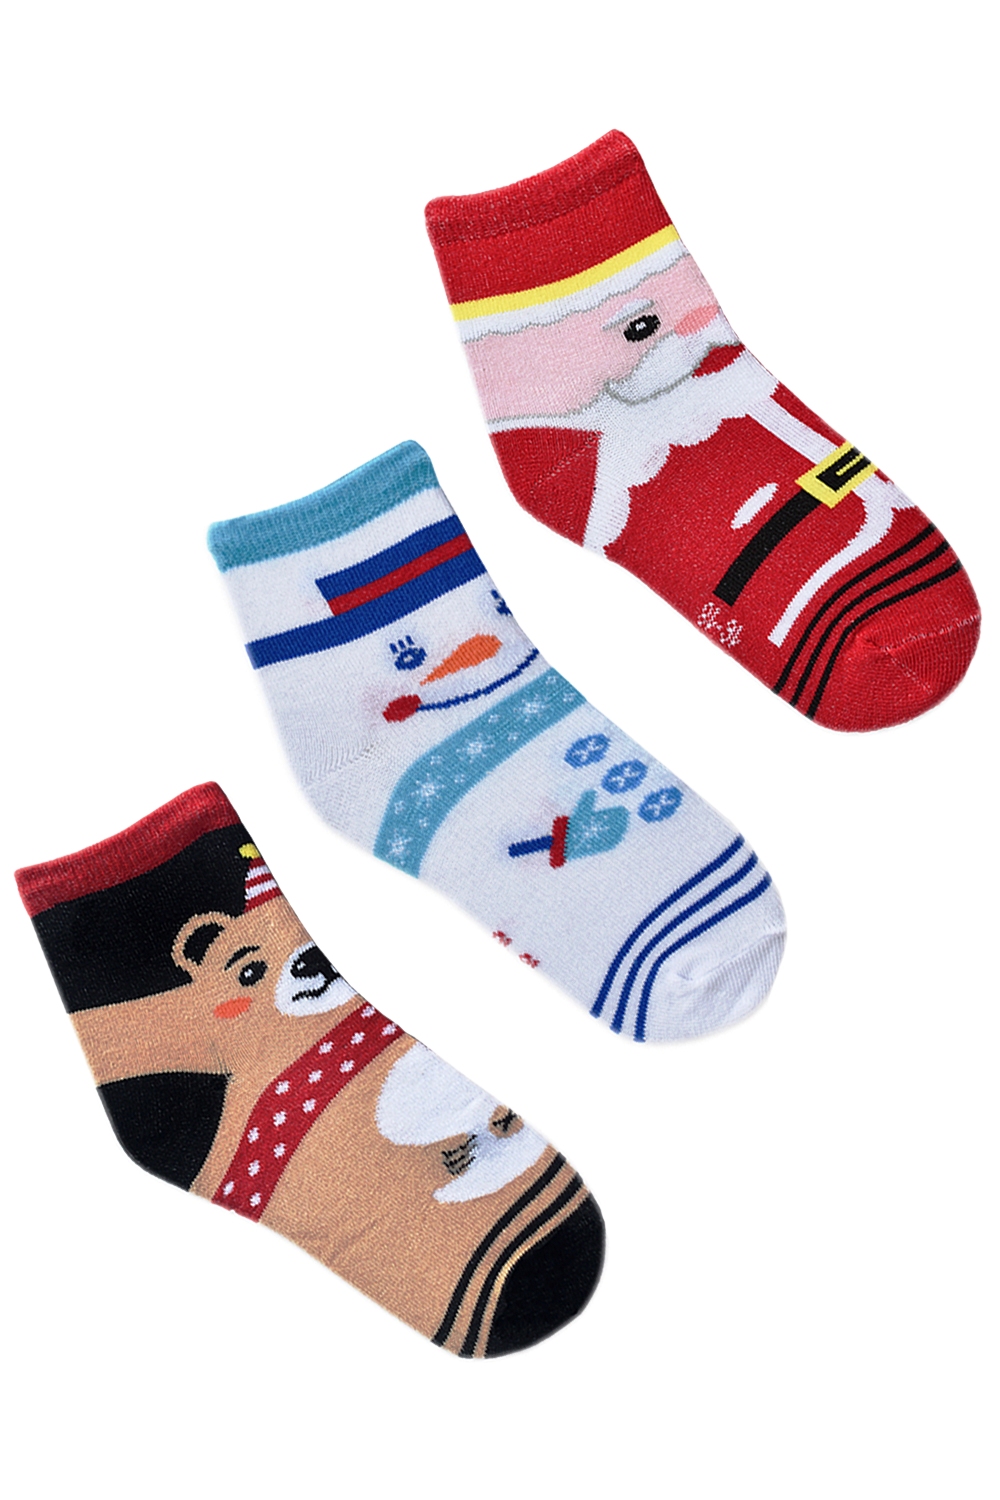 Набор детских носков "Праздник" в упаковке, 3 пары